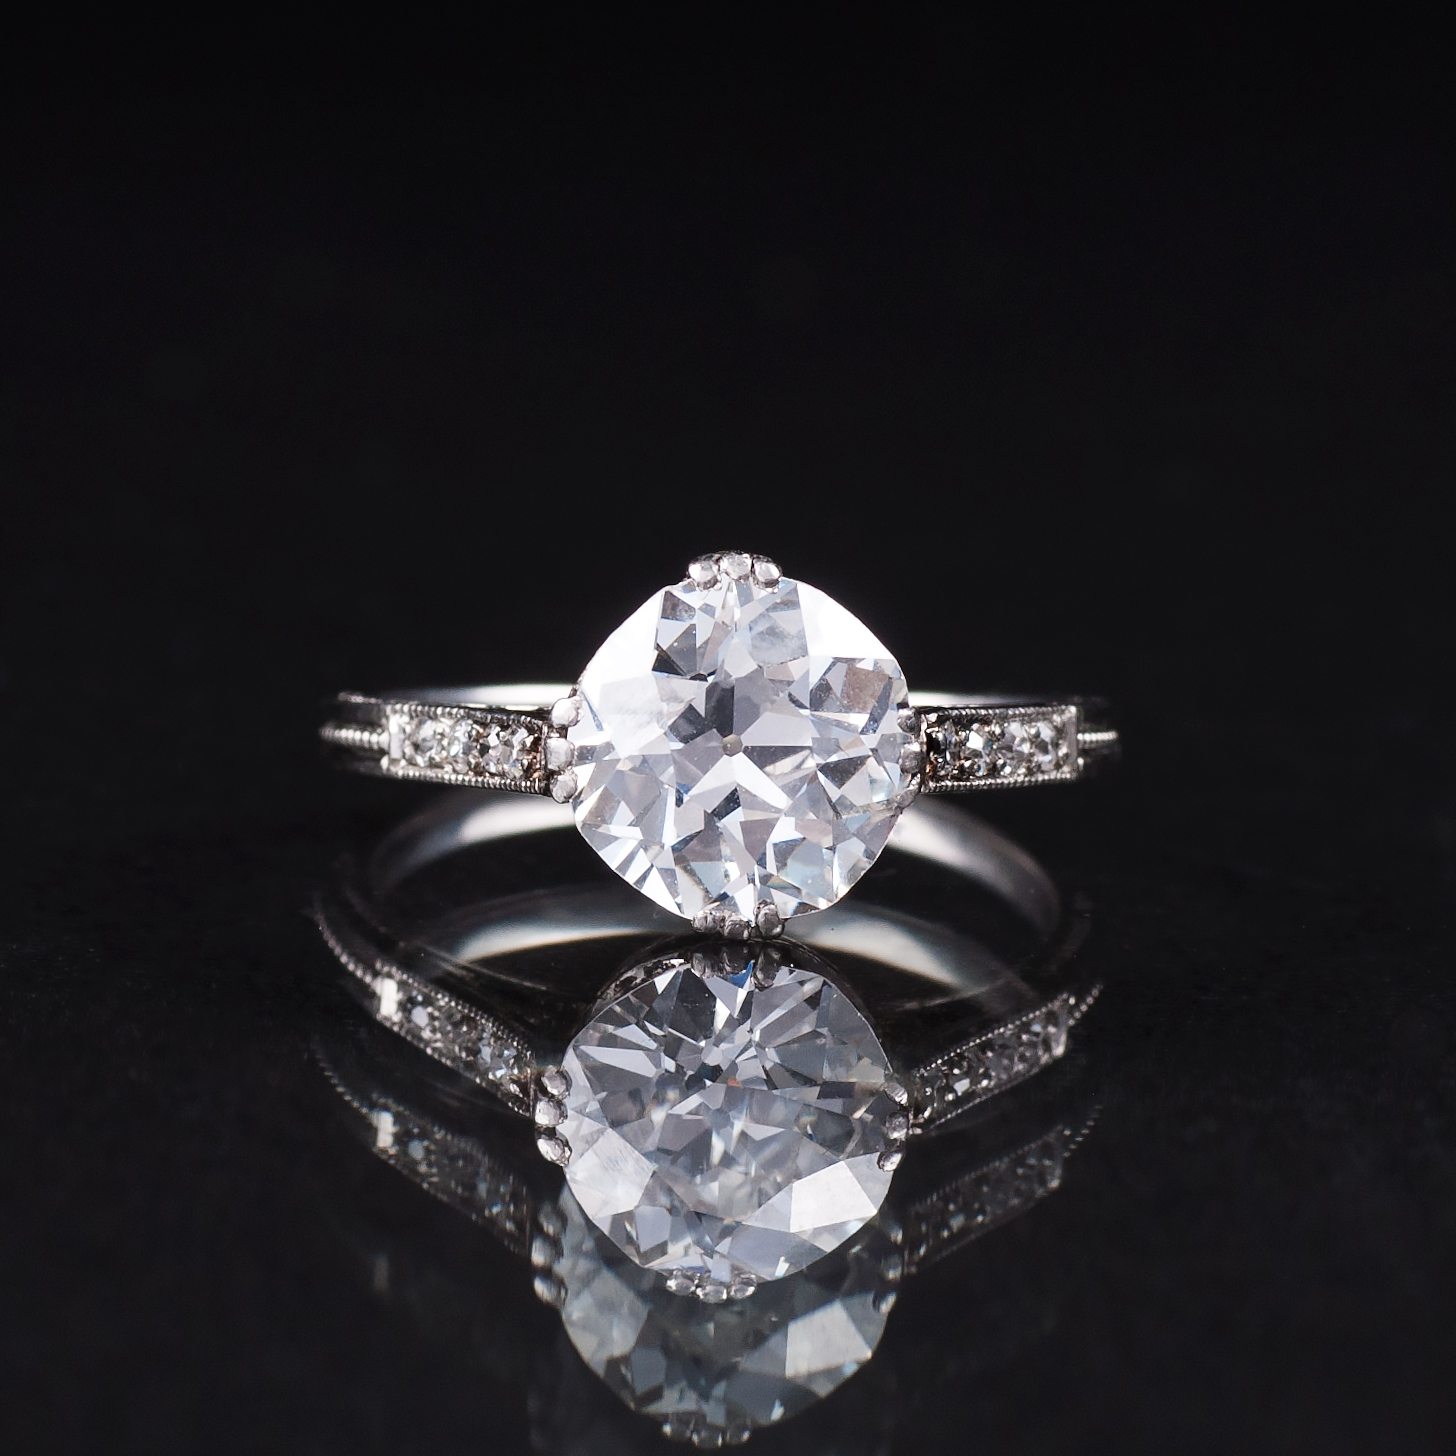 An Art Nouveau Solitaire Diamond Ring